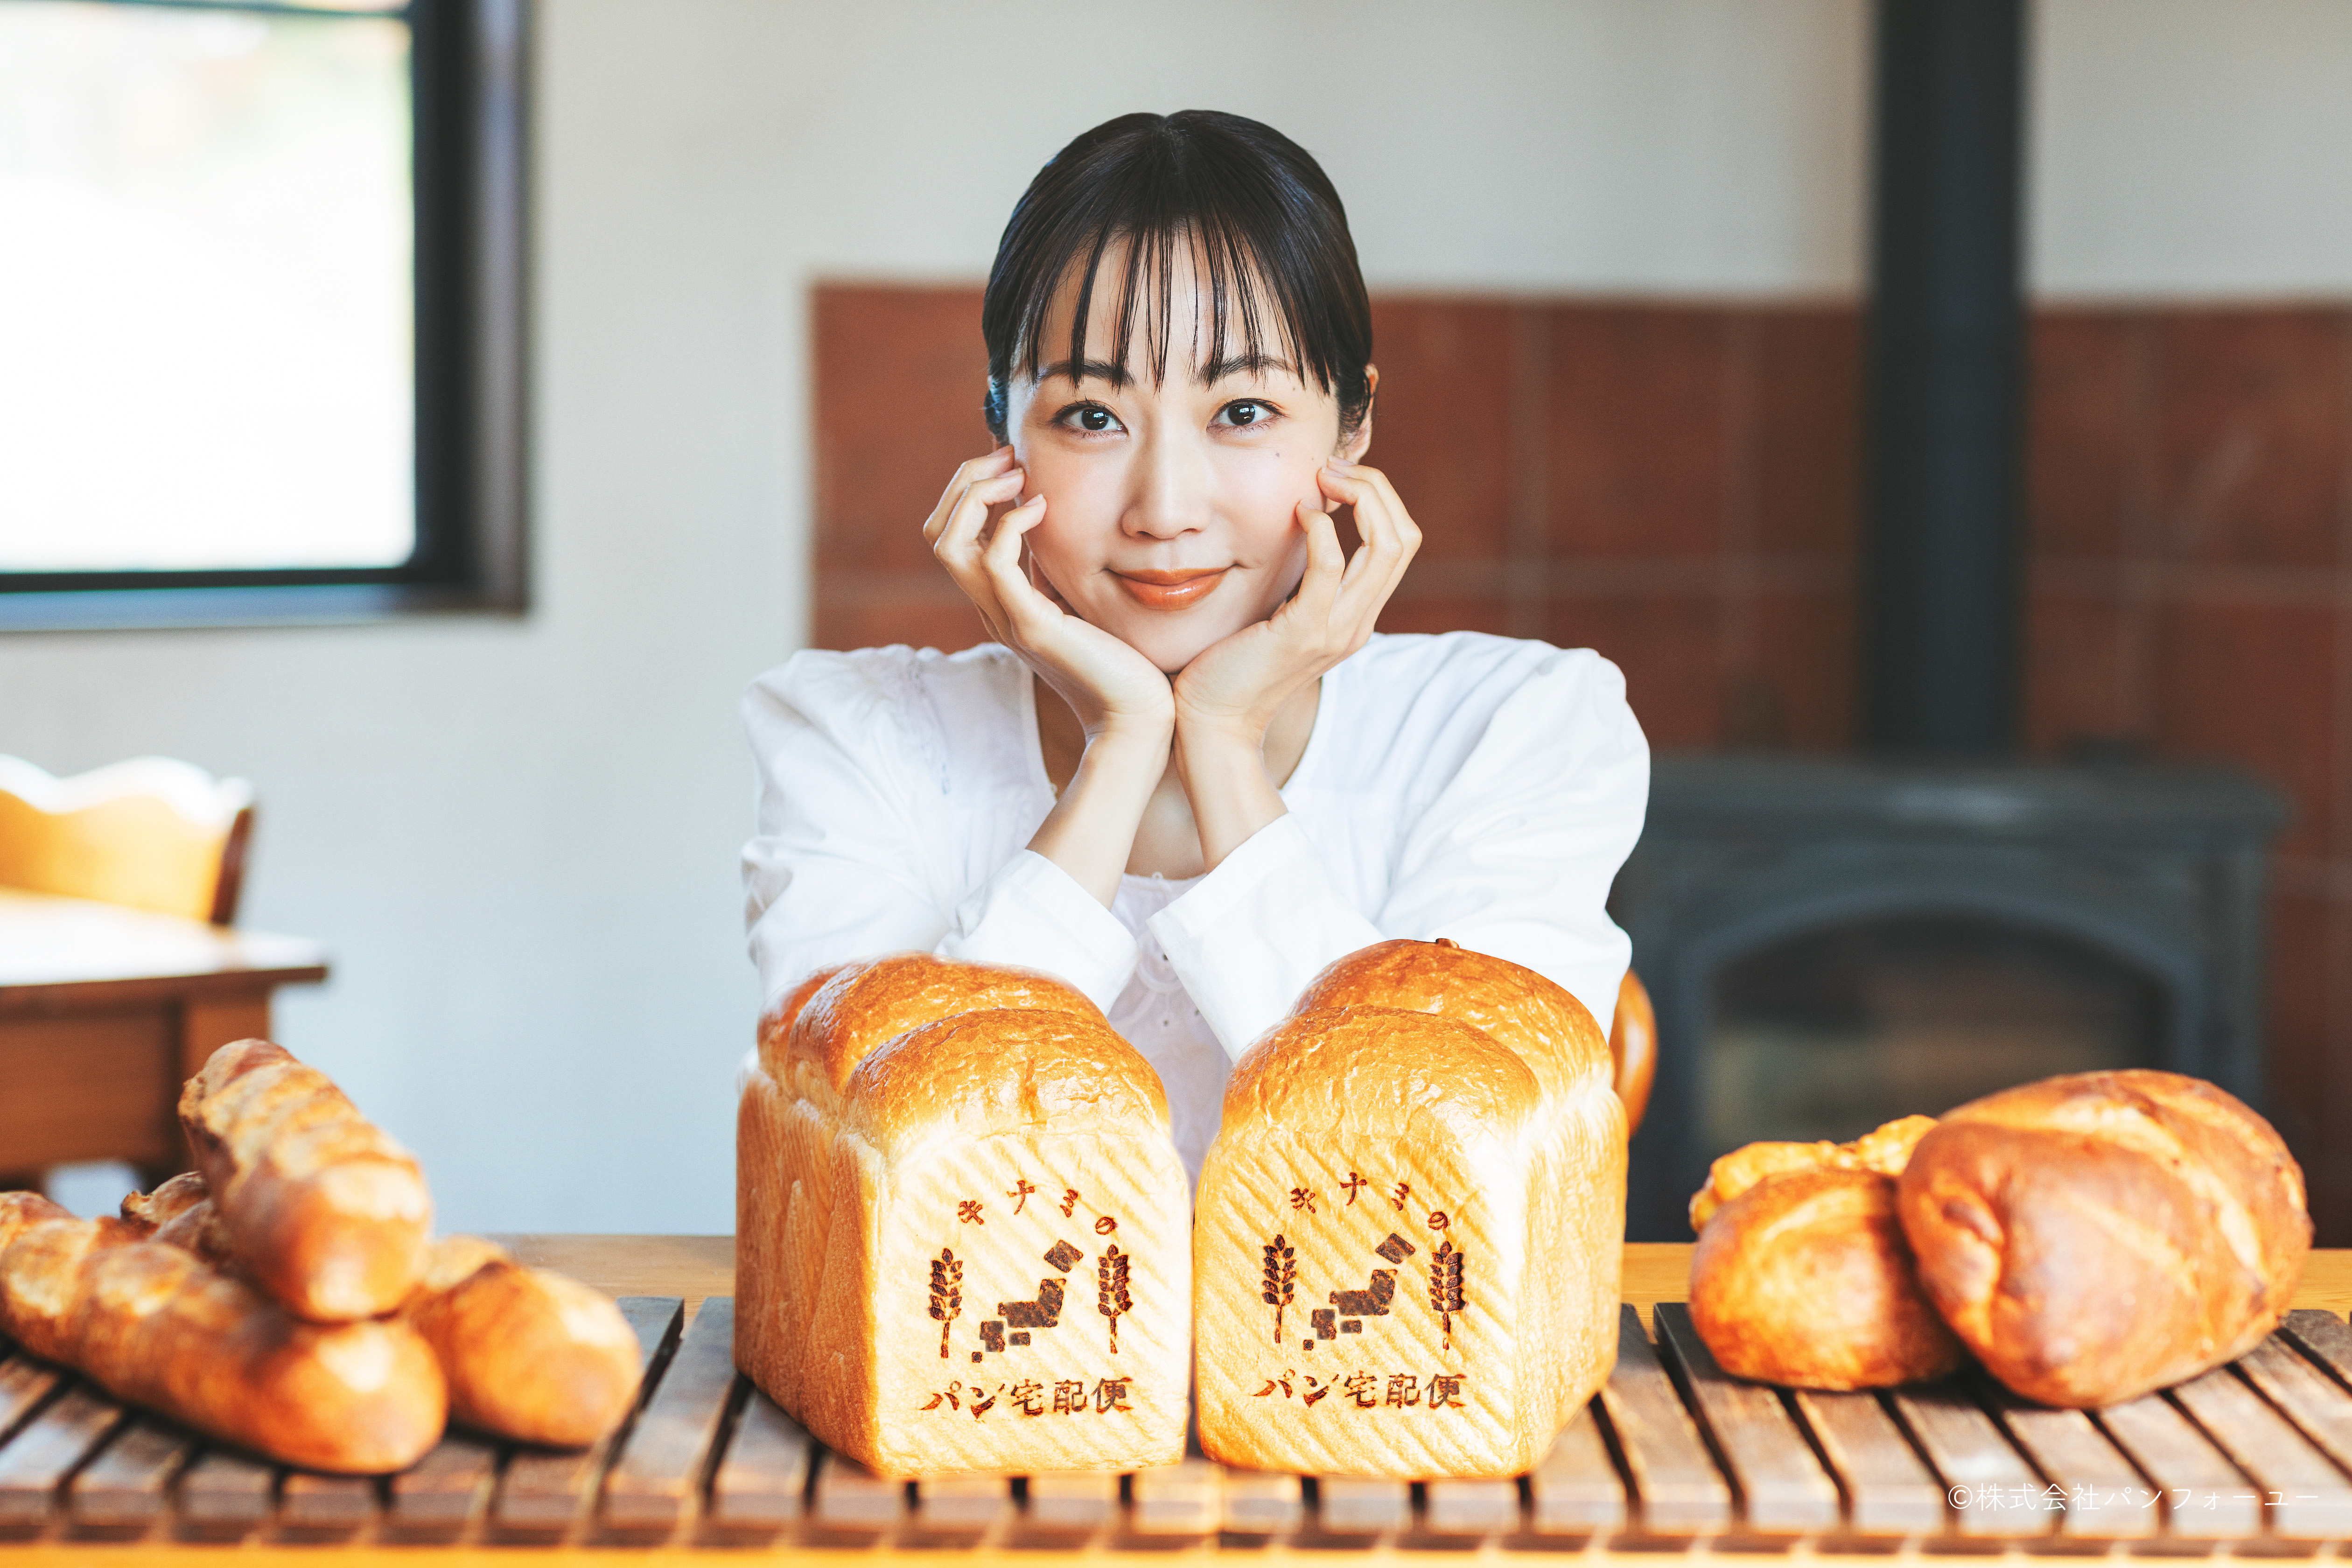 木南晴夏 冷凍パンをご自宅までお届け キナミのパン宅配便 開始 株式会社ホリプロのプレスリリース